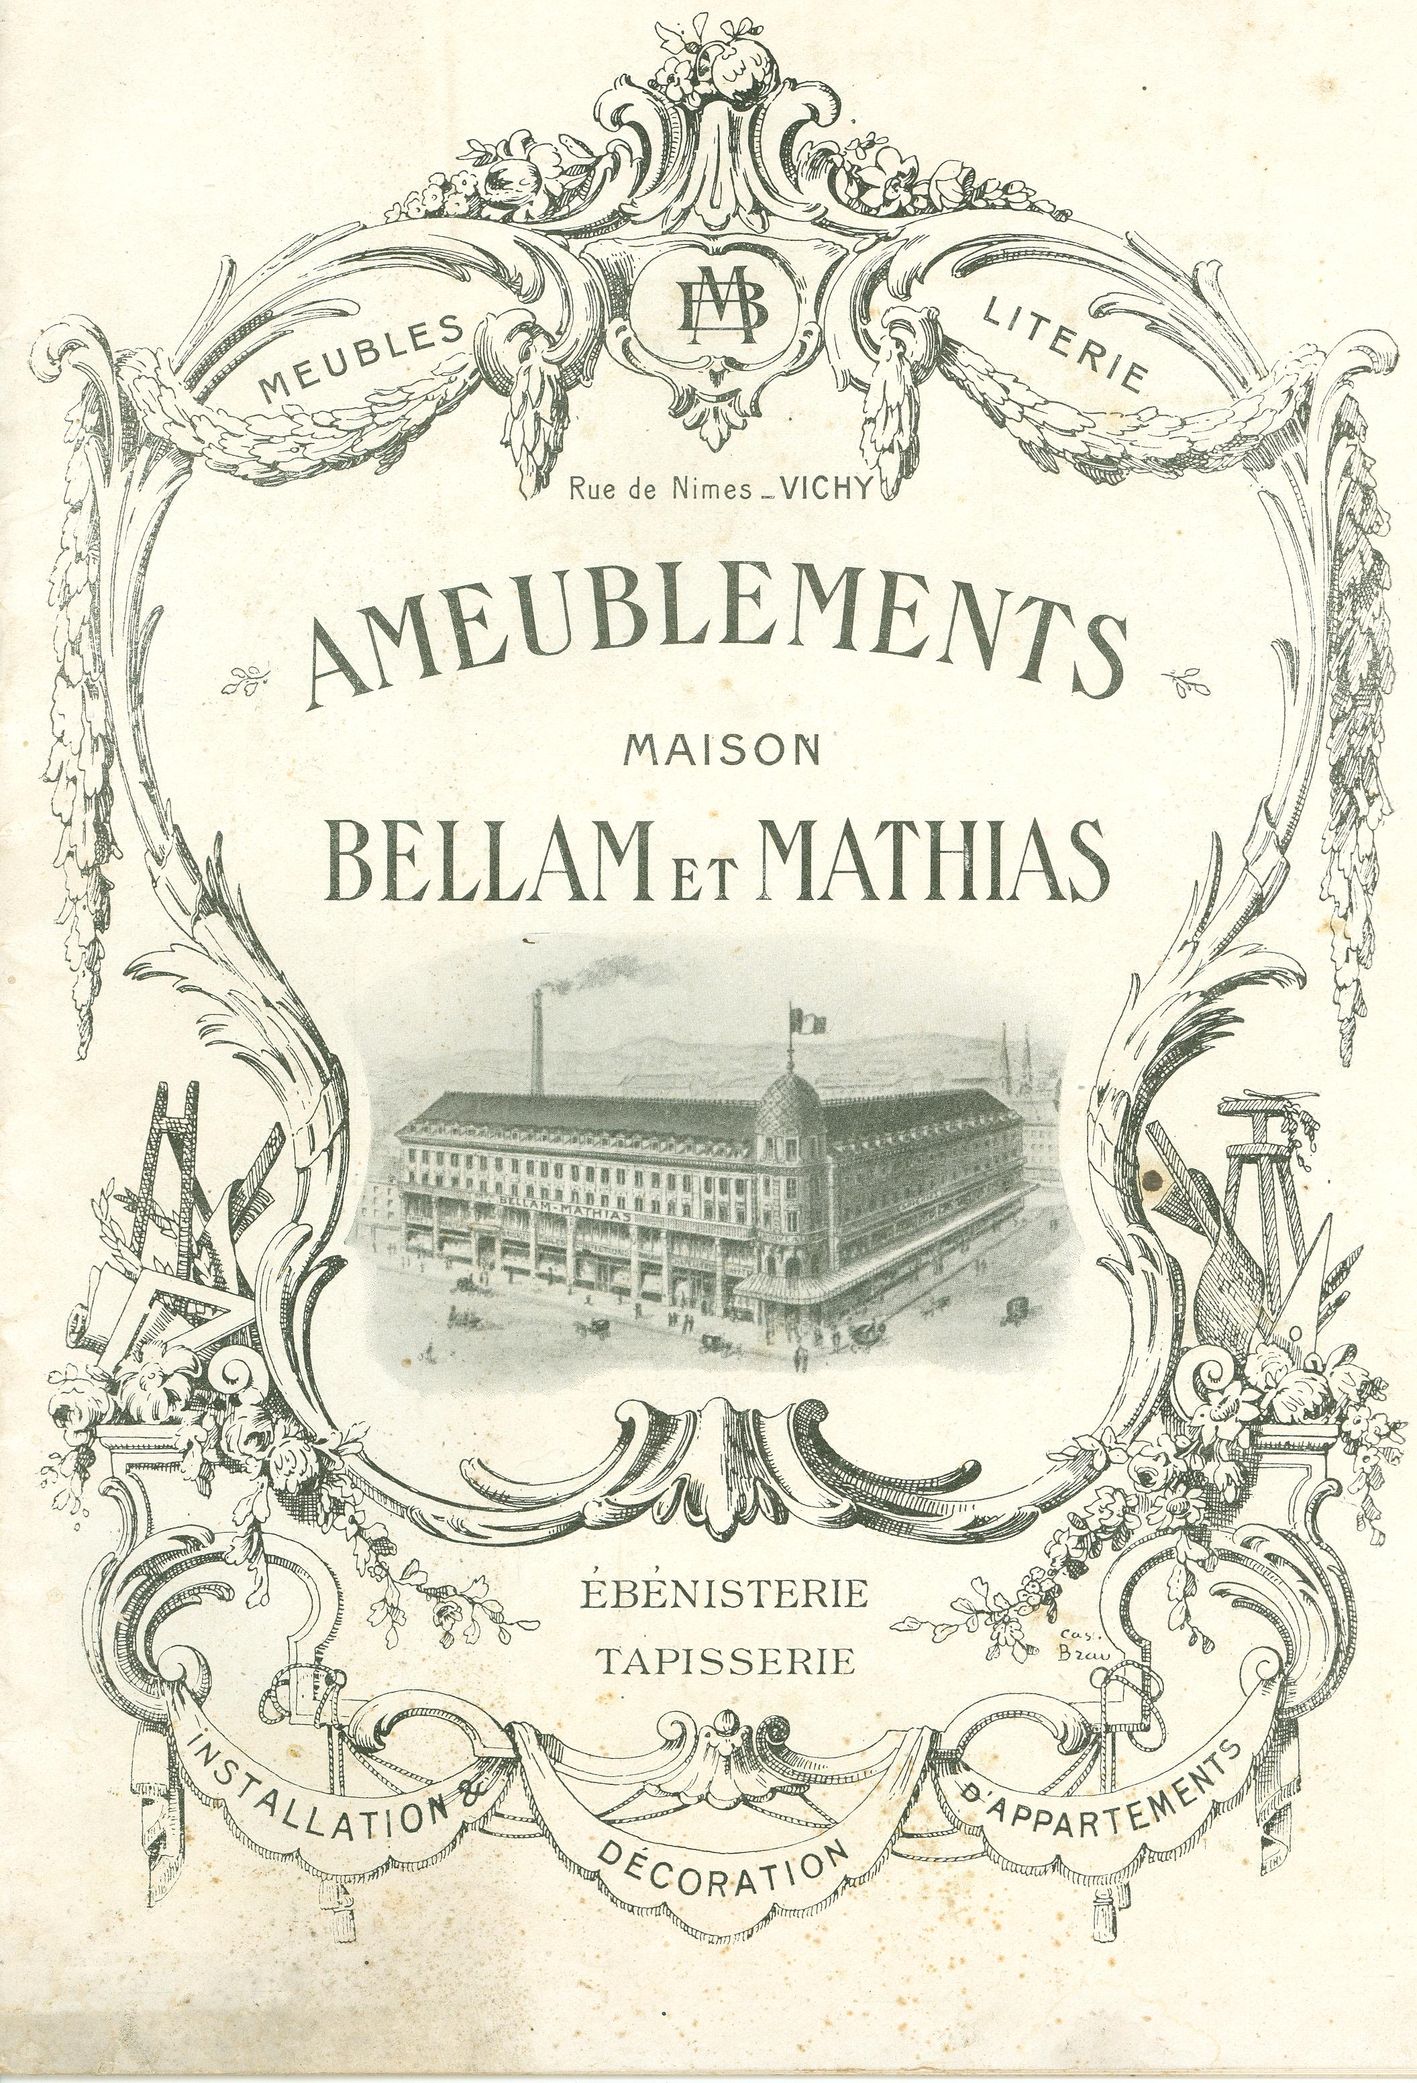 37 1914ca Catalogue Bellam Mathias ameublement Laval